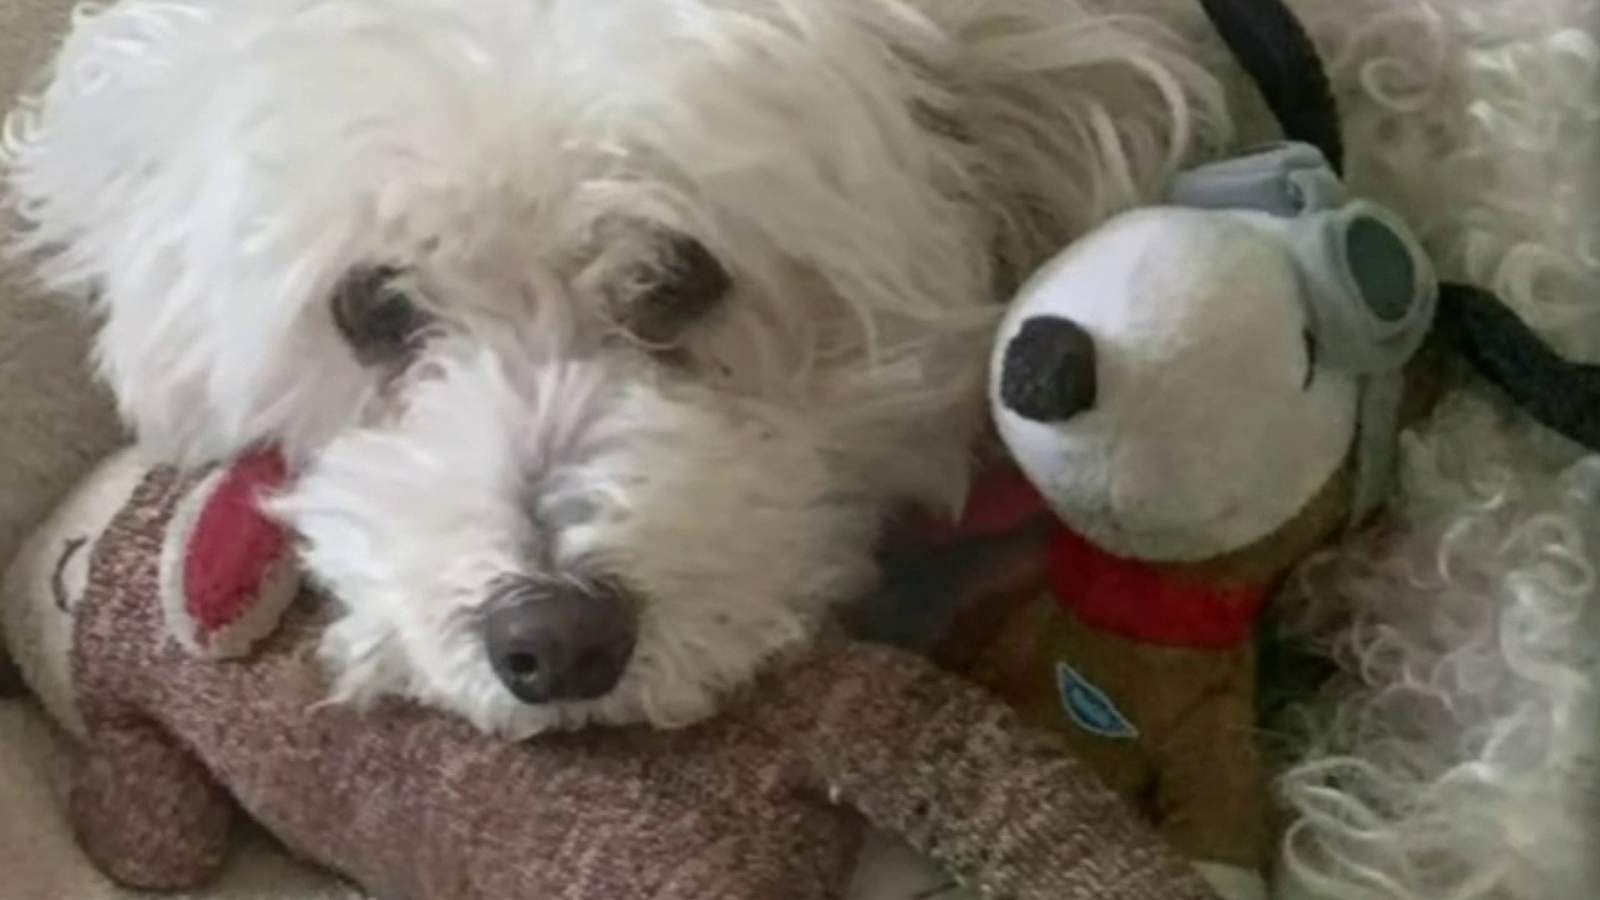 Troy family concerned after dog ingests rat poison